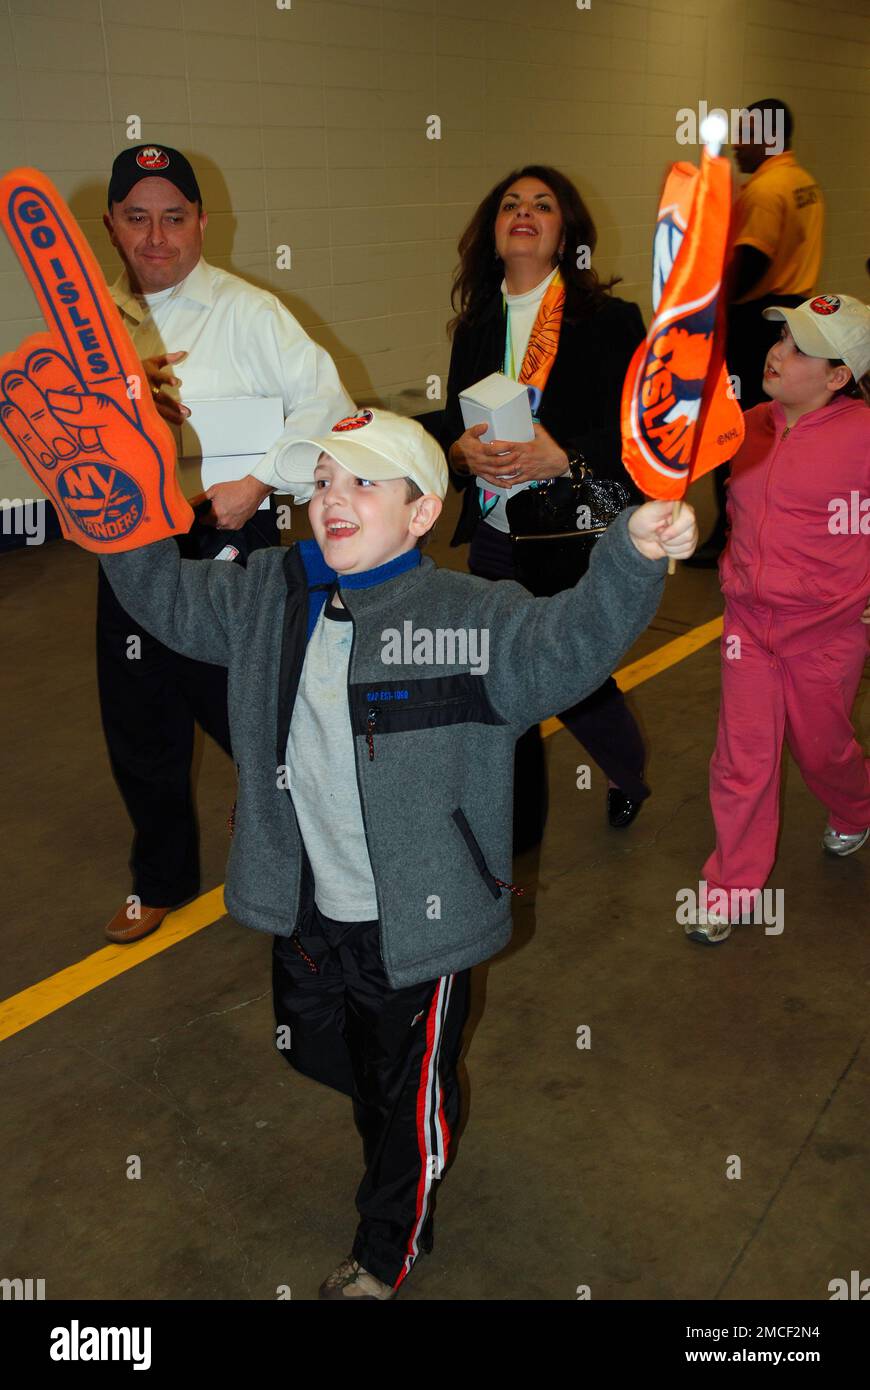 Ein junger Fan sagt, dass „Let Go Islanders“ für seine Lieblingsmannschaft steht, während er sich mit seiner Familie zum Hockeyspiel aufmacht Stockfoto